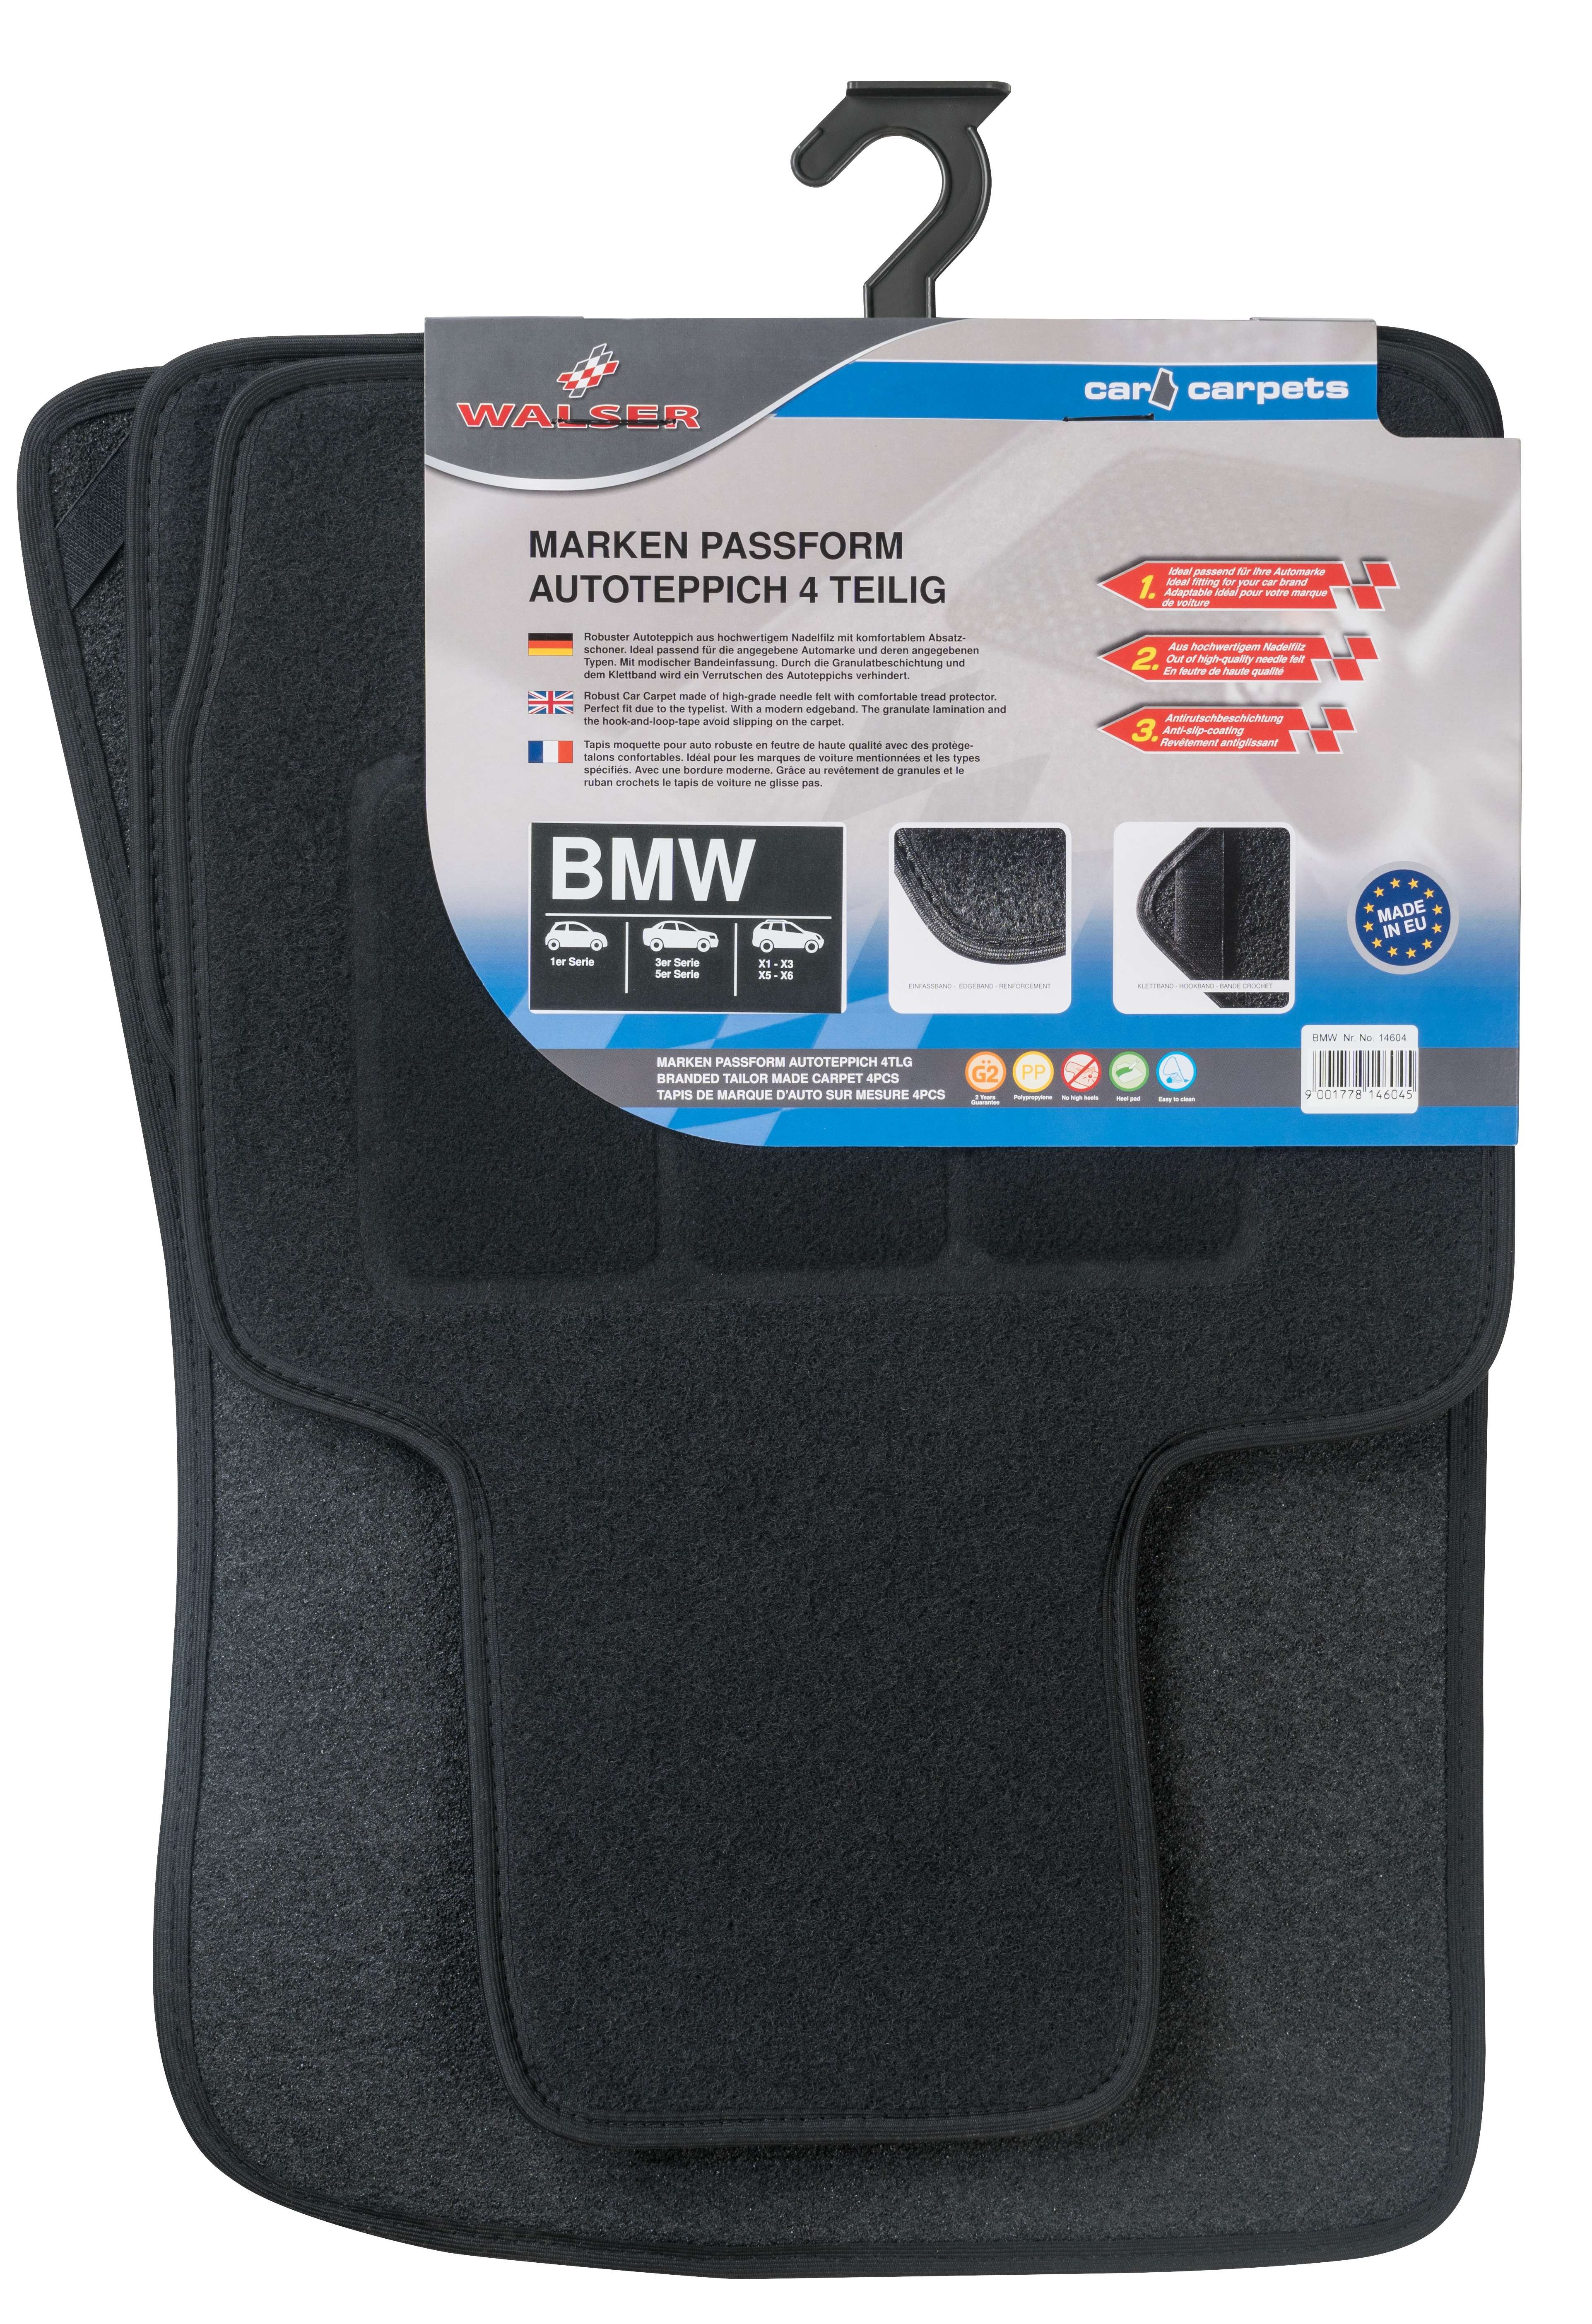 Semi Passform Fussmatten für BMW 4-teilig